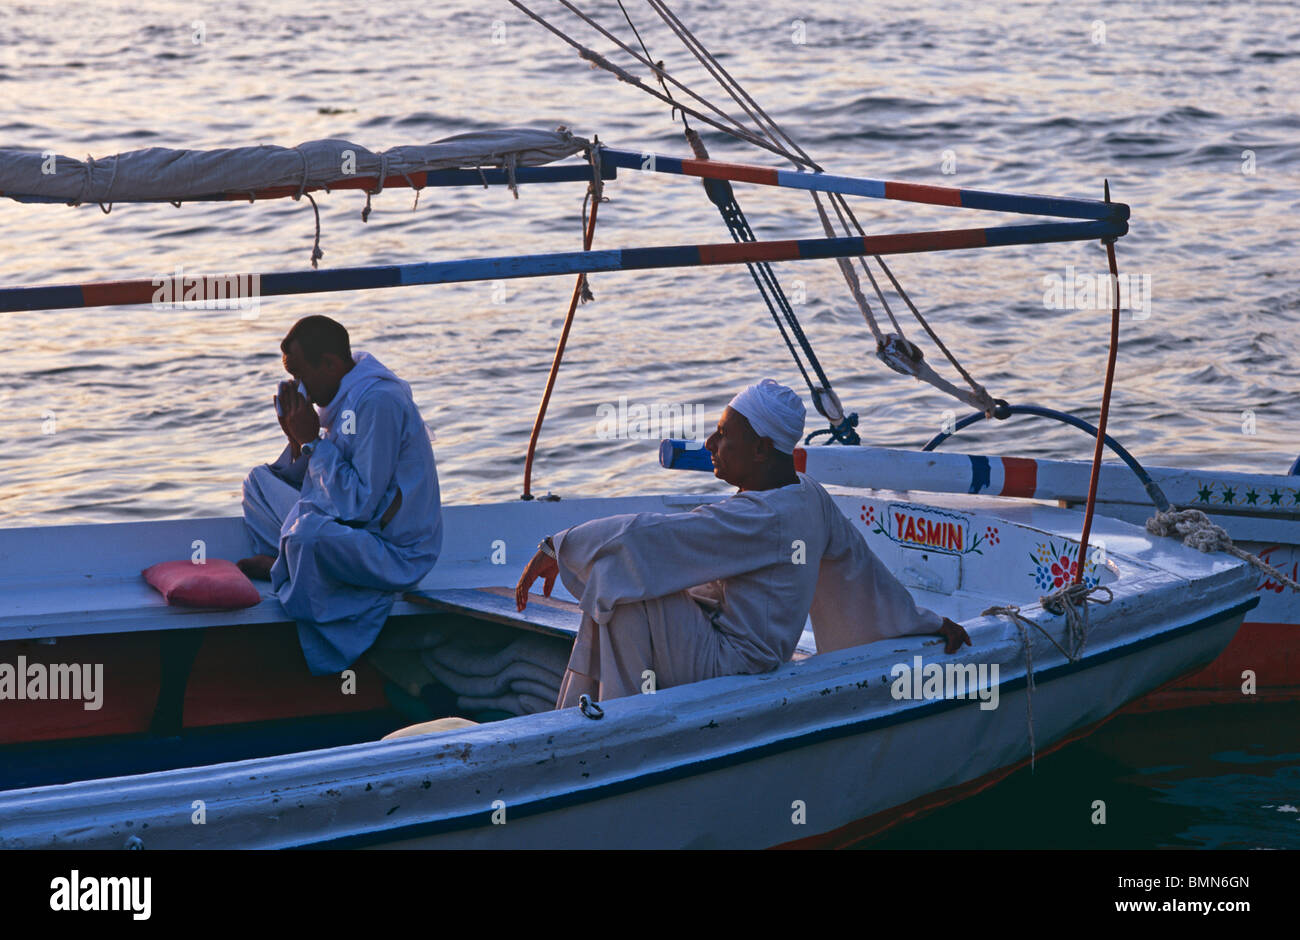 Bateau felouque sur le Nil au crépuscule l'Egypte Afrique du Nord Banque D'Images